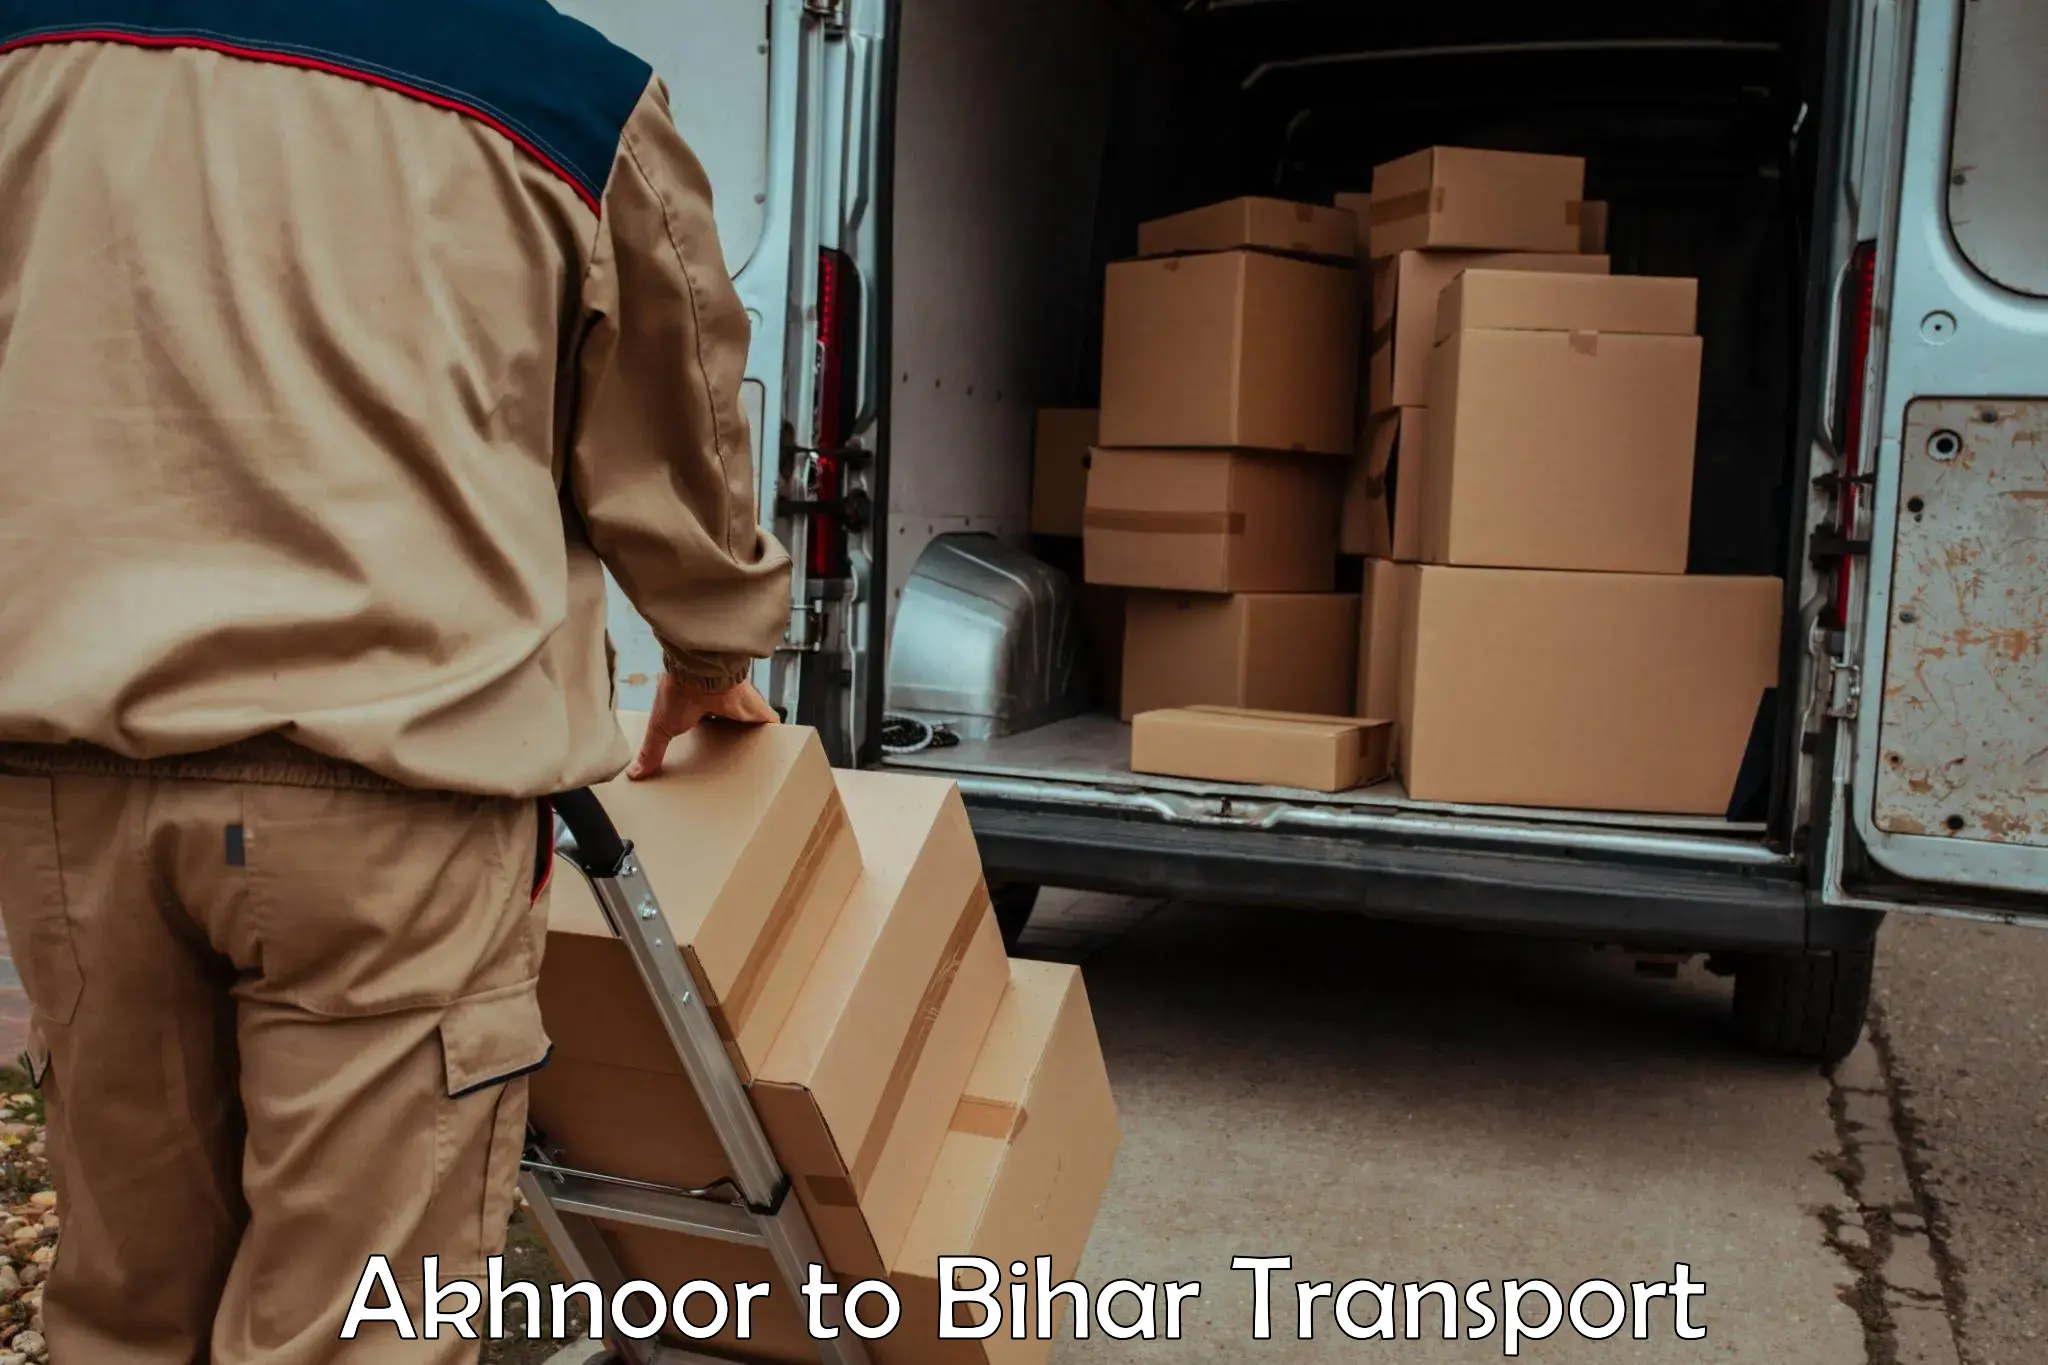 Cargo transport services Akhnoor to Kochas